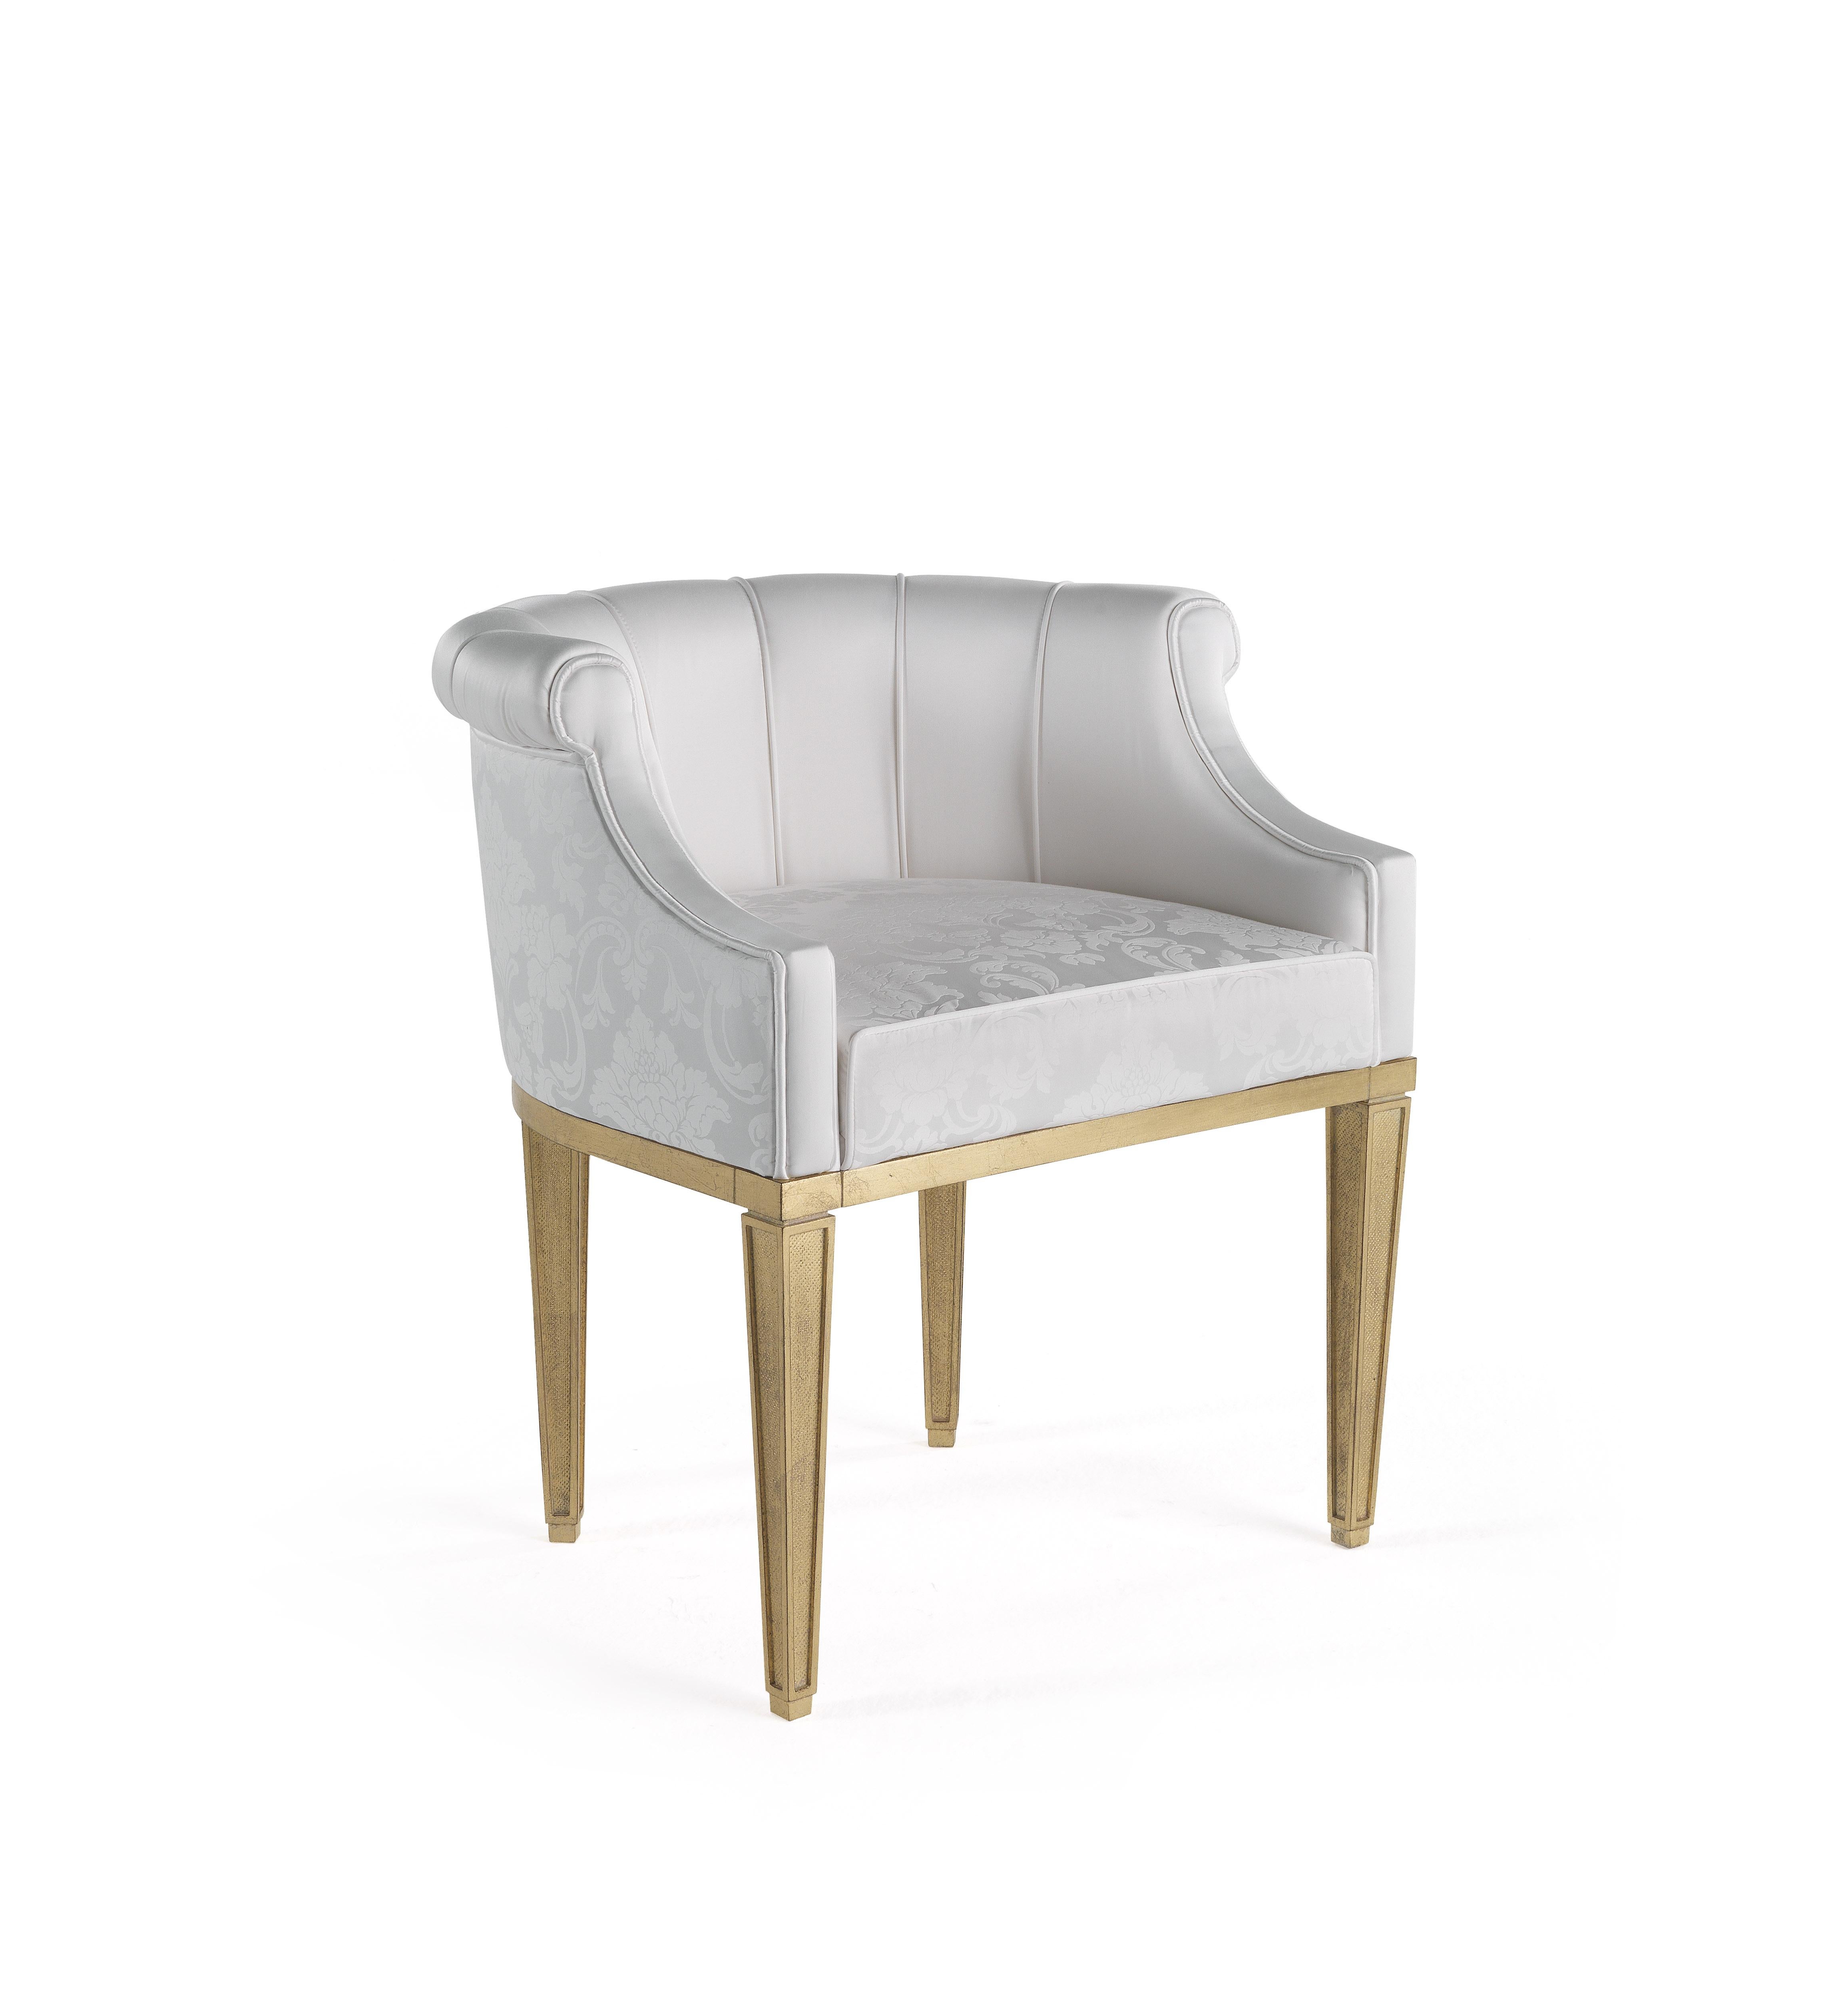 A mi-chemin entre la chaise et le fauteuil, Fuji est un meuble raffiné qui exprime un style classique frais et lumineux. Elle présente un dossier en forme de coquillage recouvert de satin de soie de la collection et des pieds à la finition dorée